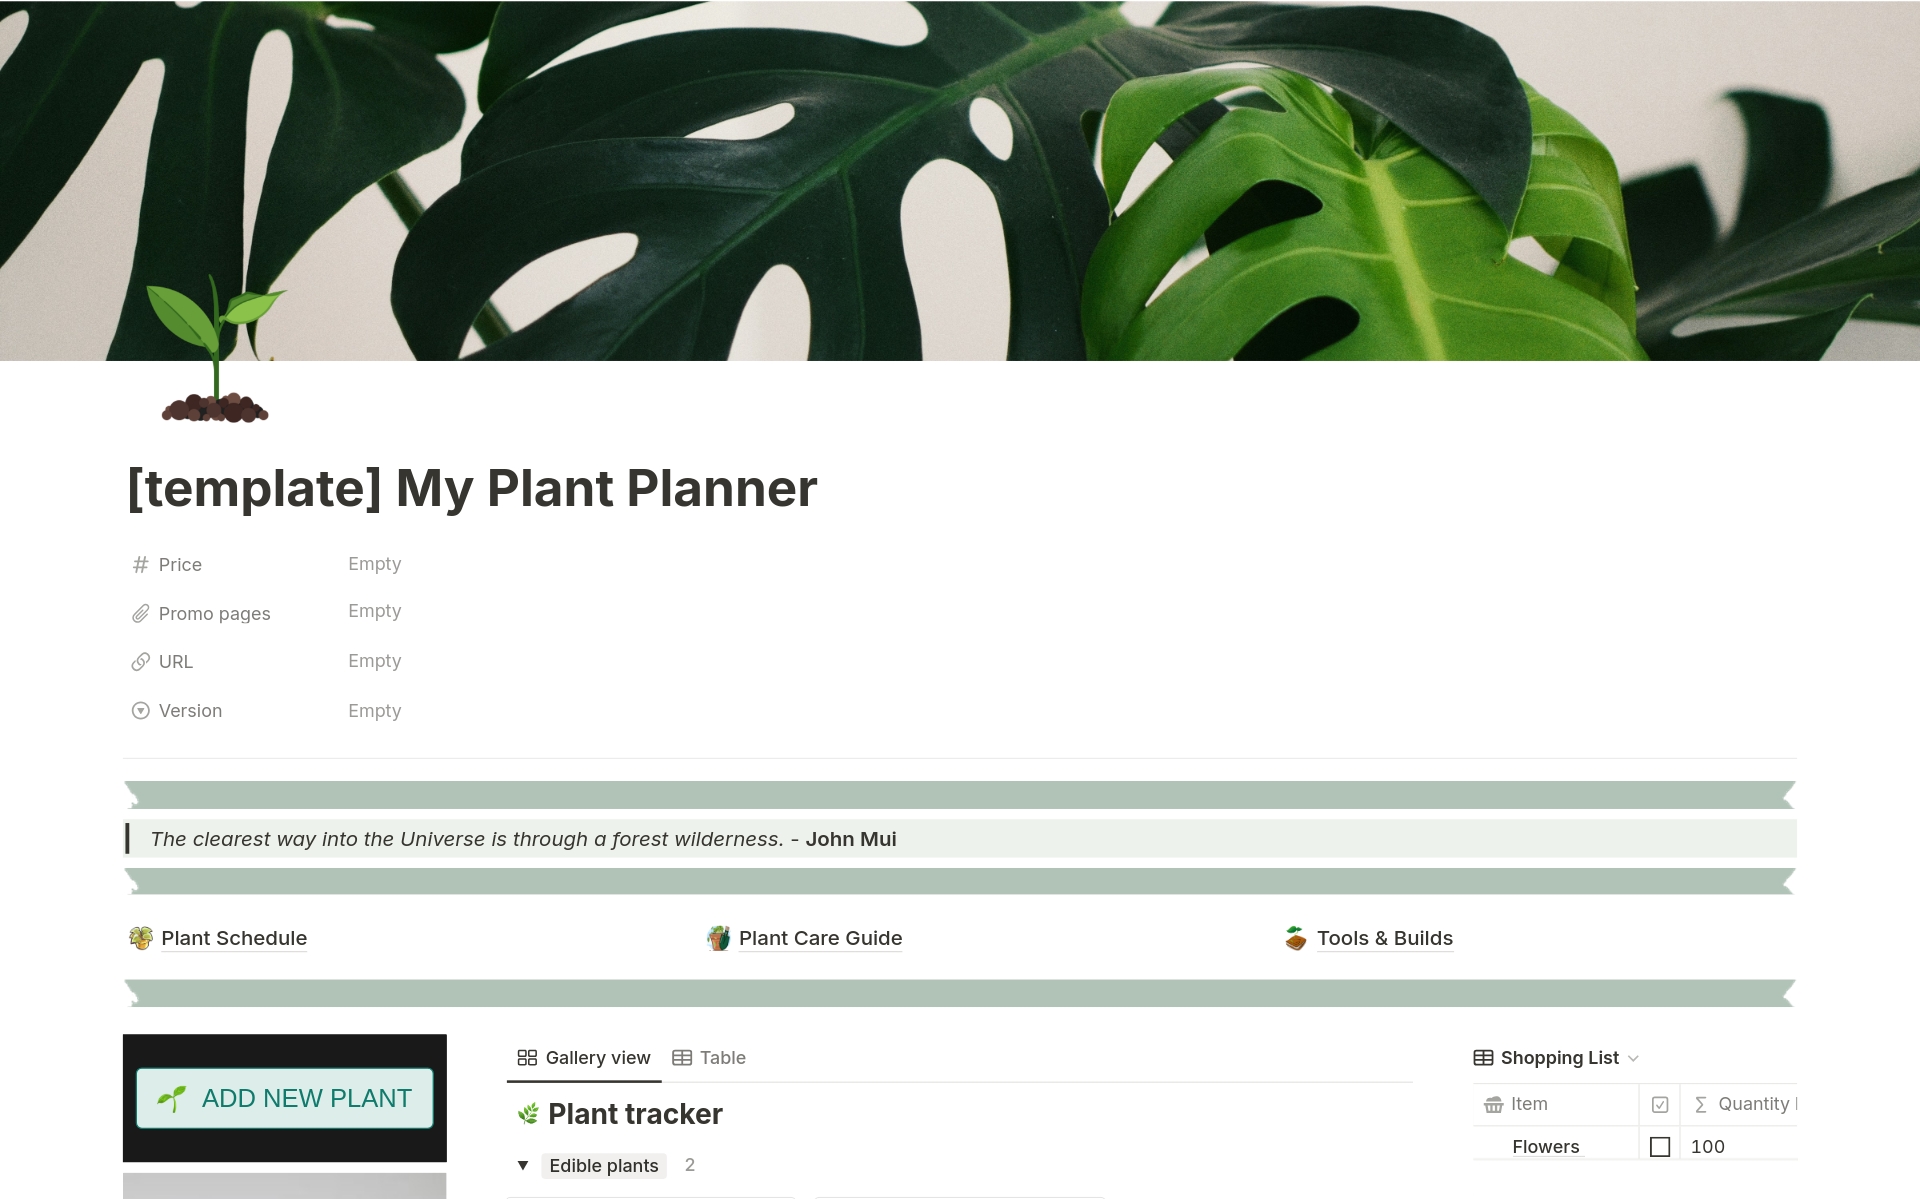 Complete Plant Planner님의 템플릿 미리보기